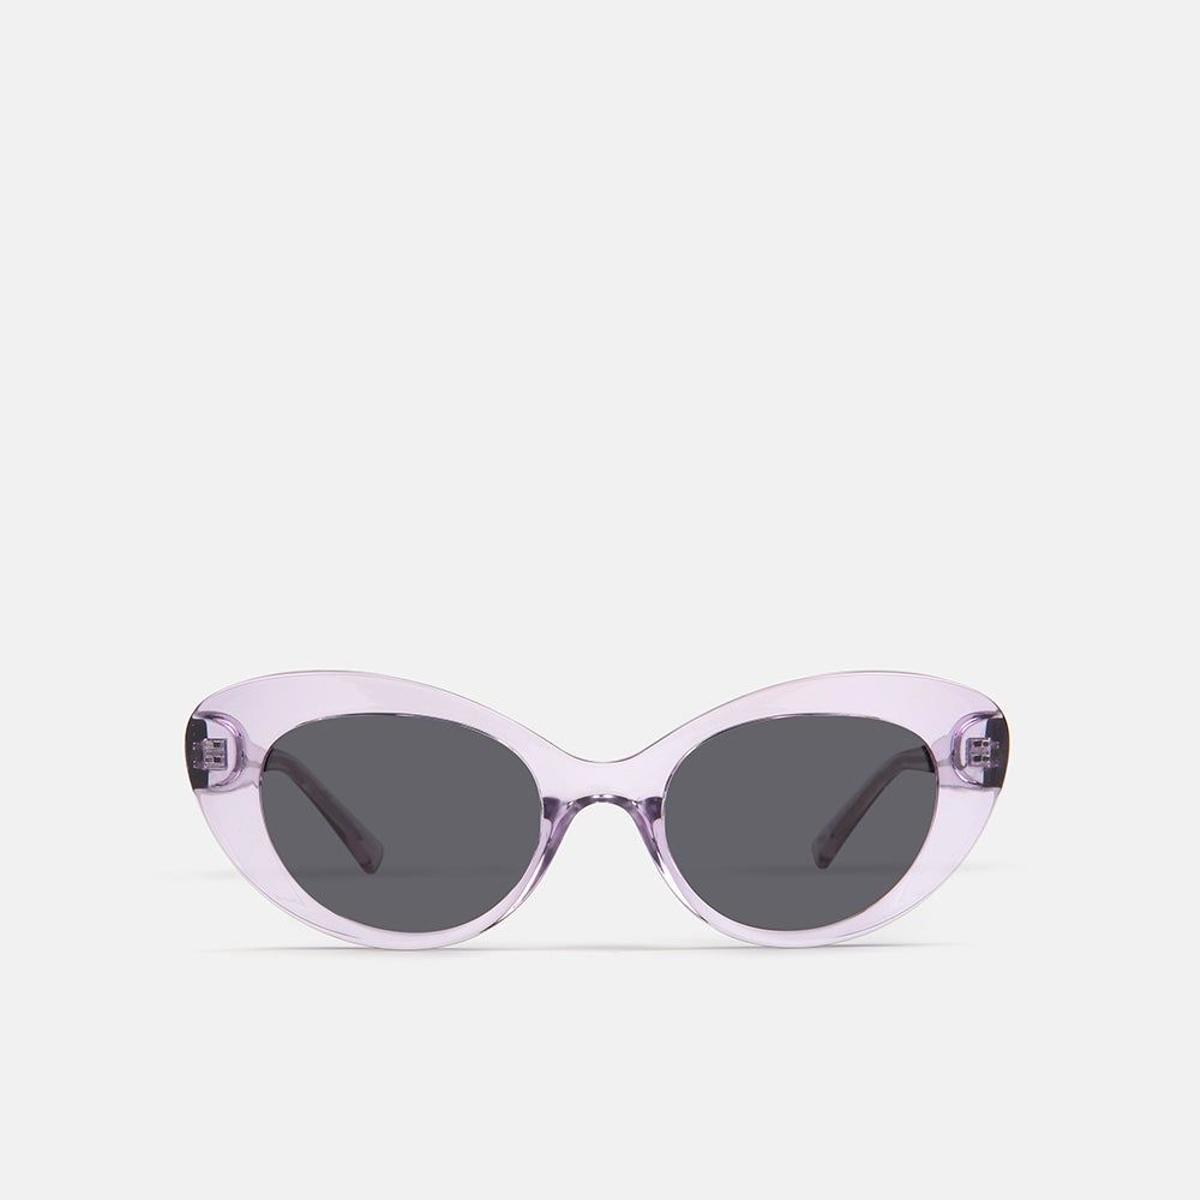 Gafas de sol Mò One Rx (Precio: 2 gafas por 29 euros)